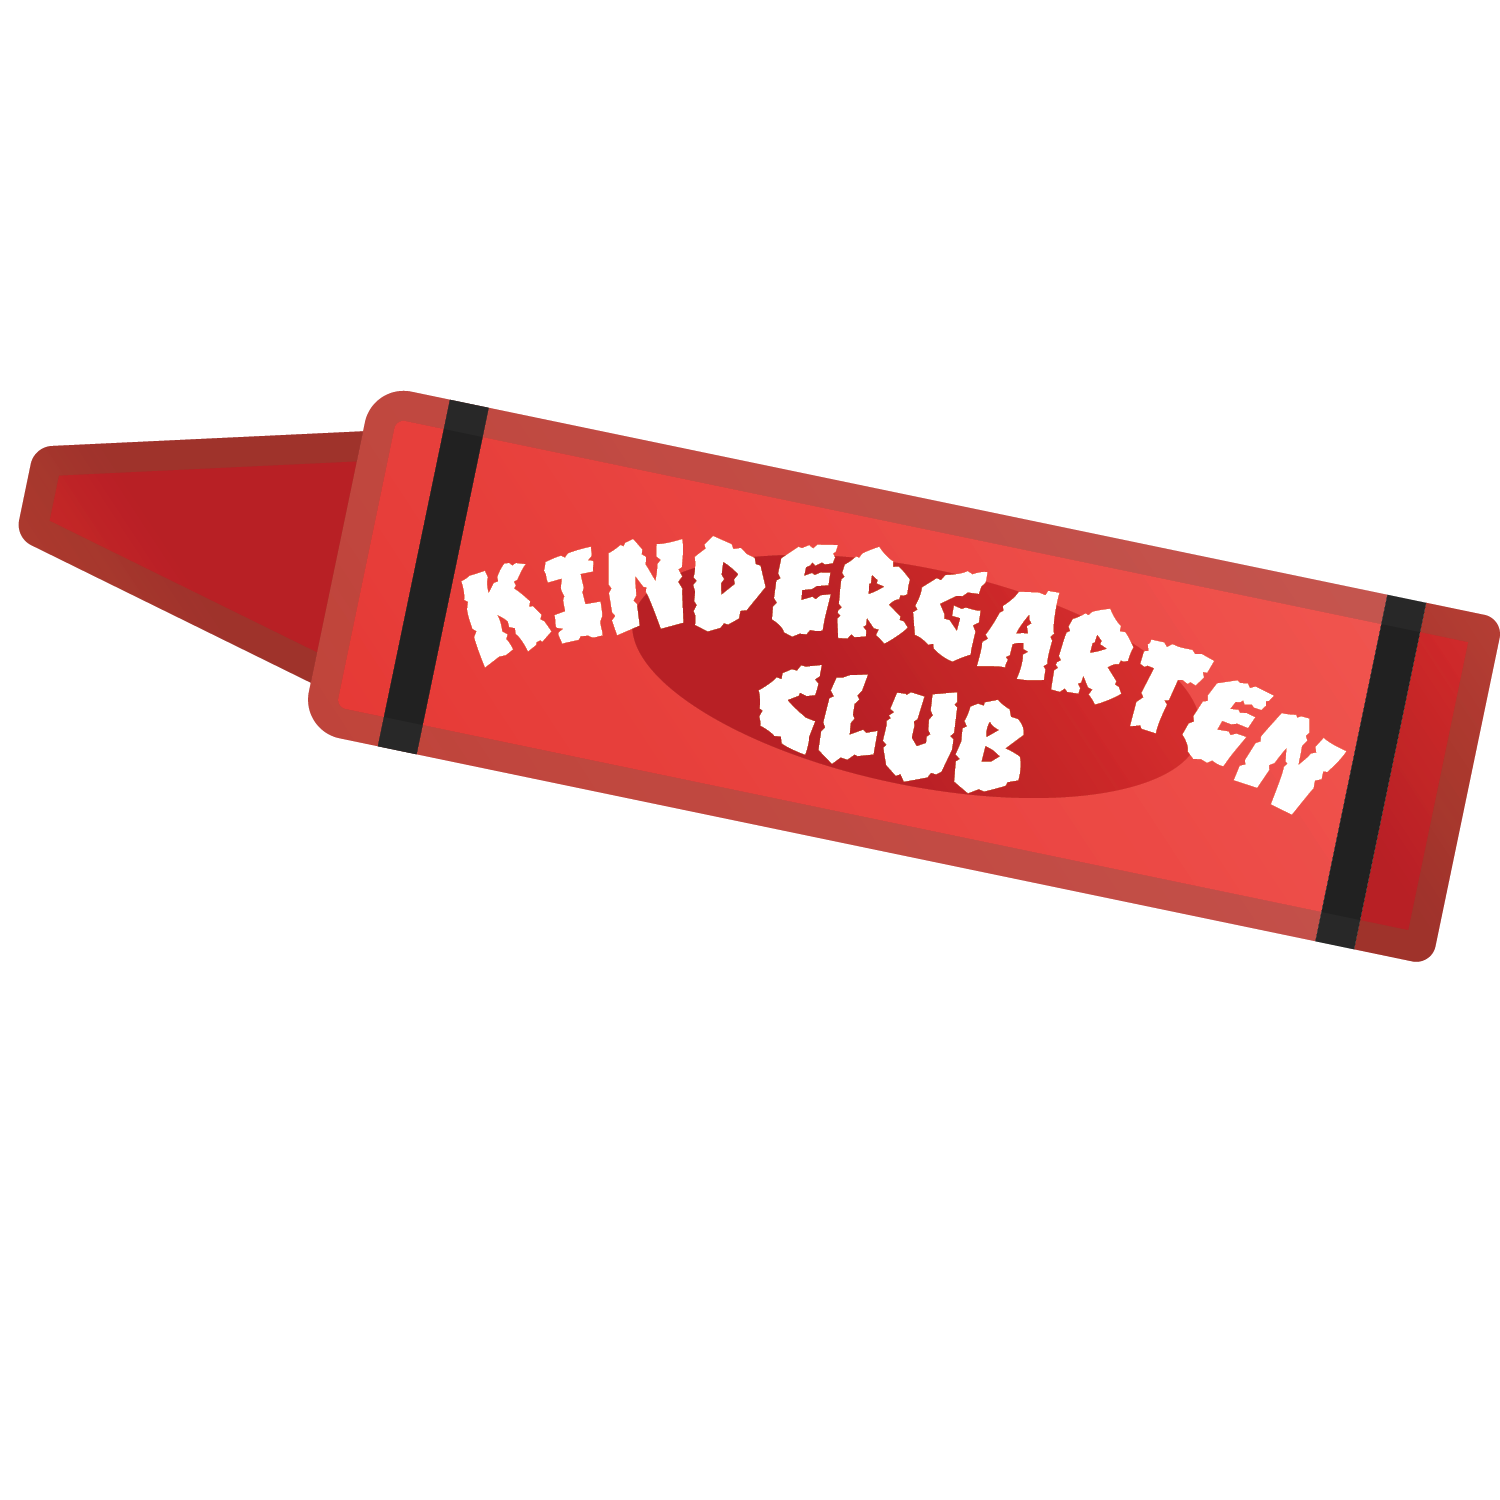 Kindergarten Club